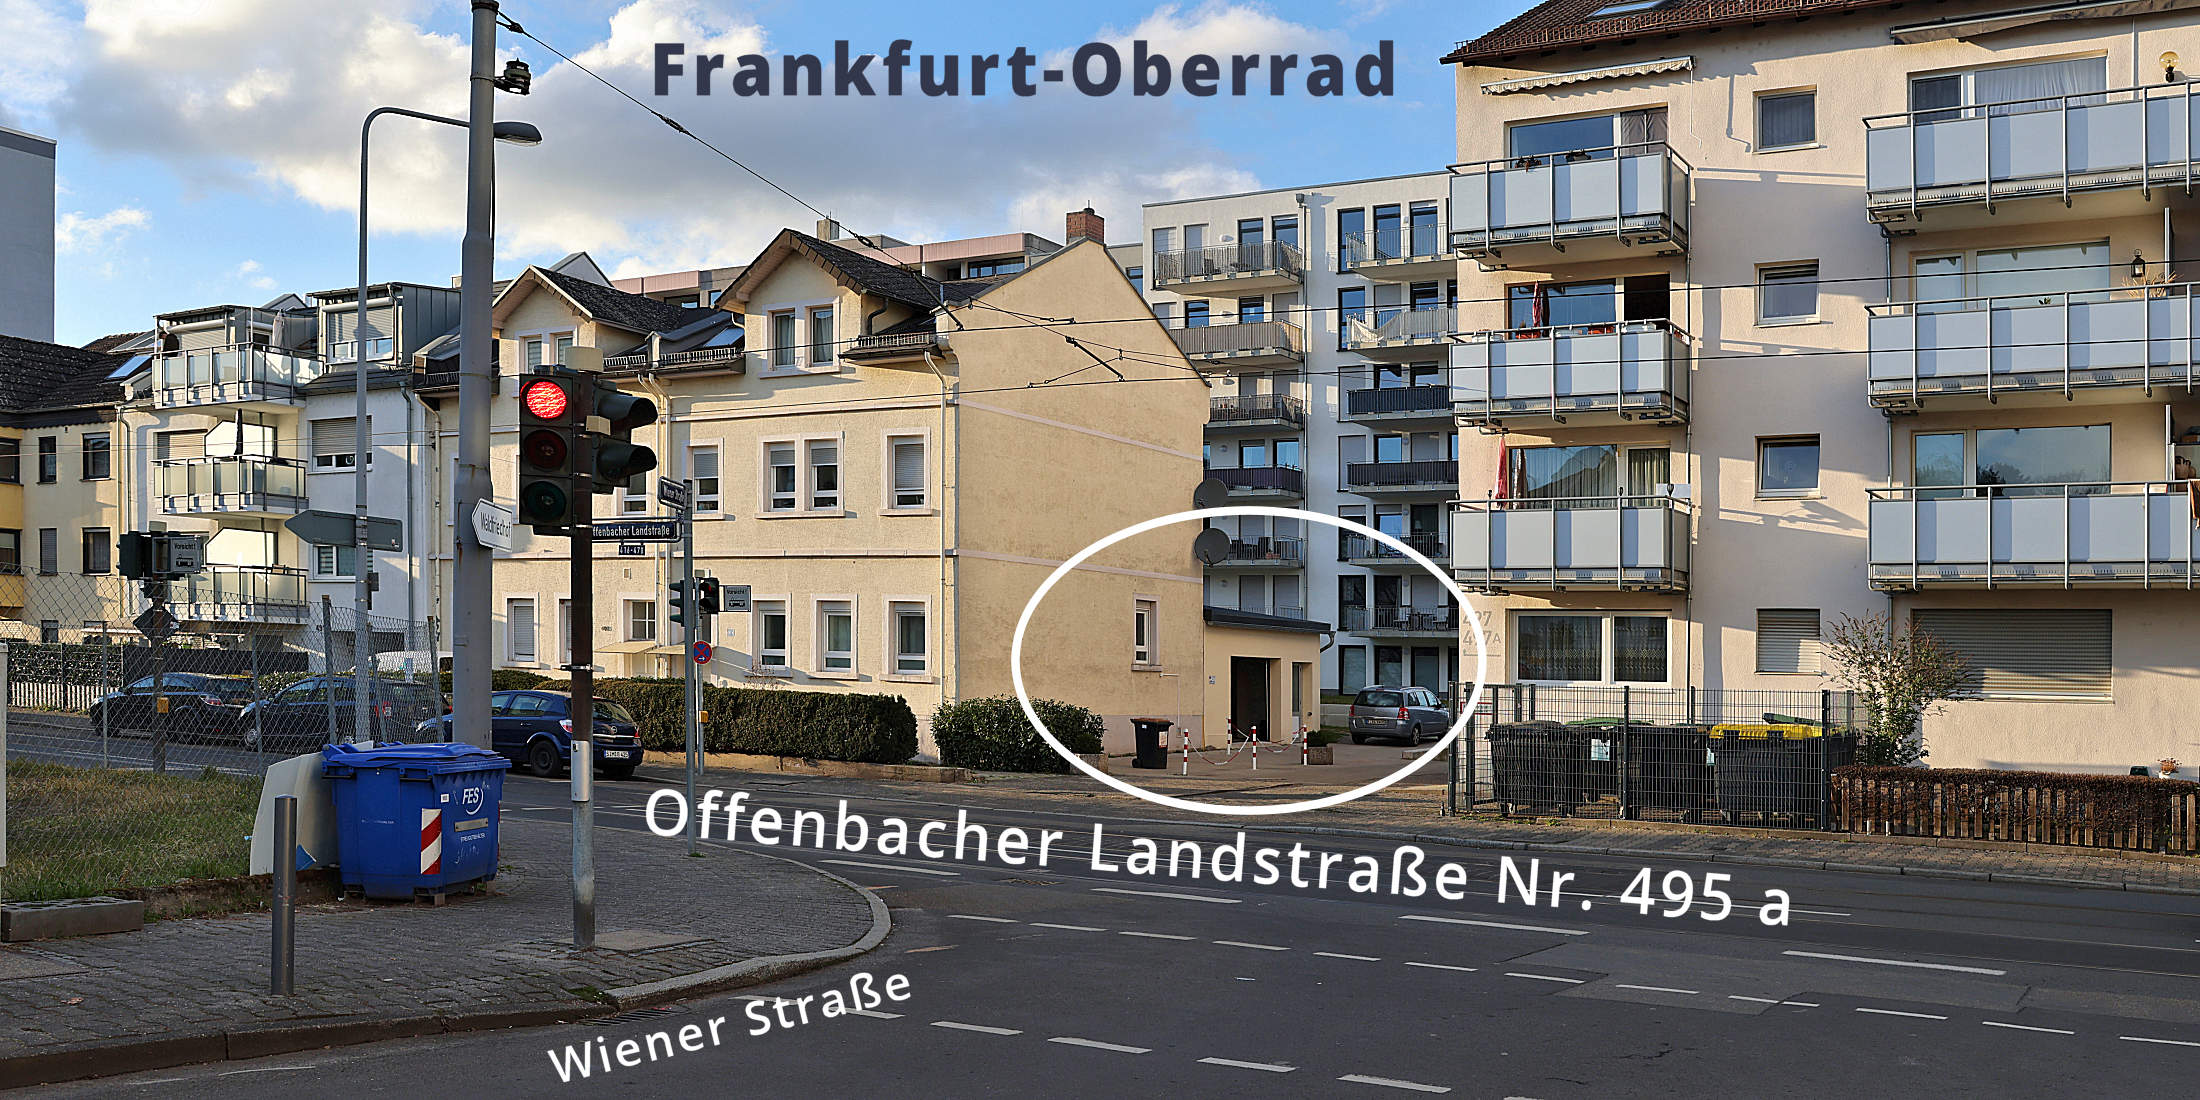 BODYNESS.FIT: Offenbacher Landstraße 495 a in 60599 Frankfurt-Oberrad